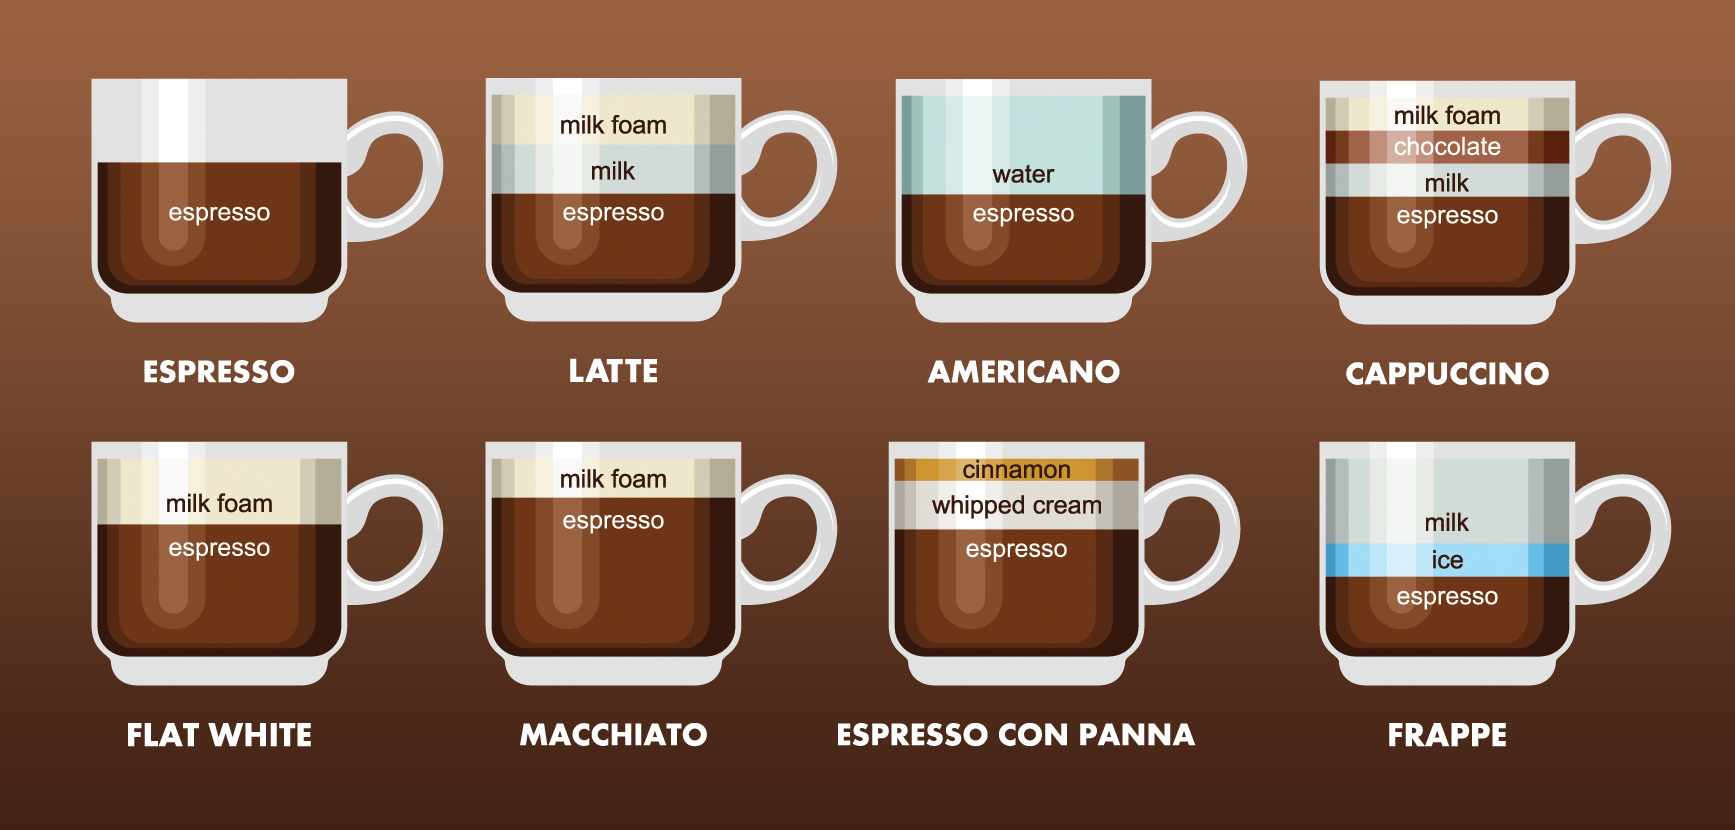 意式咖啡机意式咖啡壶美式咖啡和意式咖啡特点11.jpg